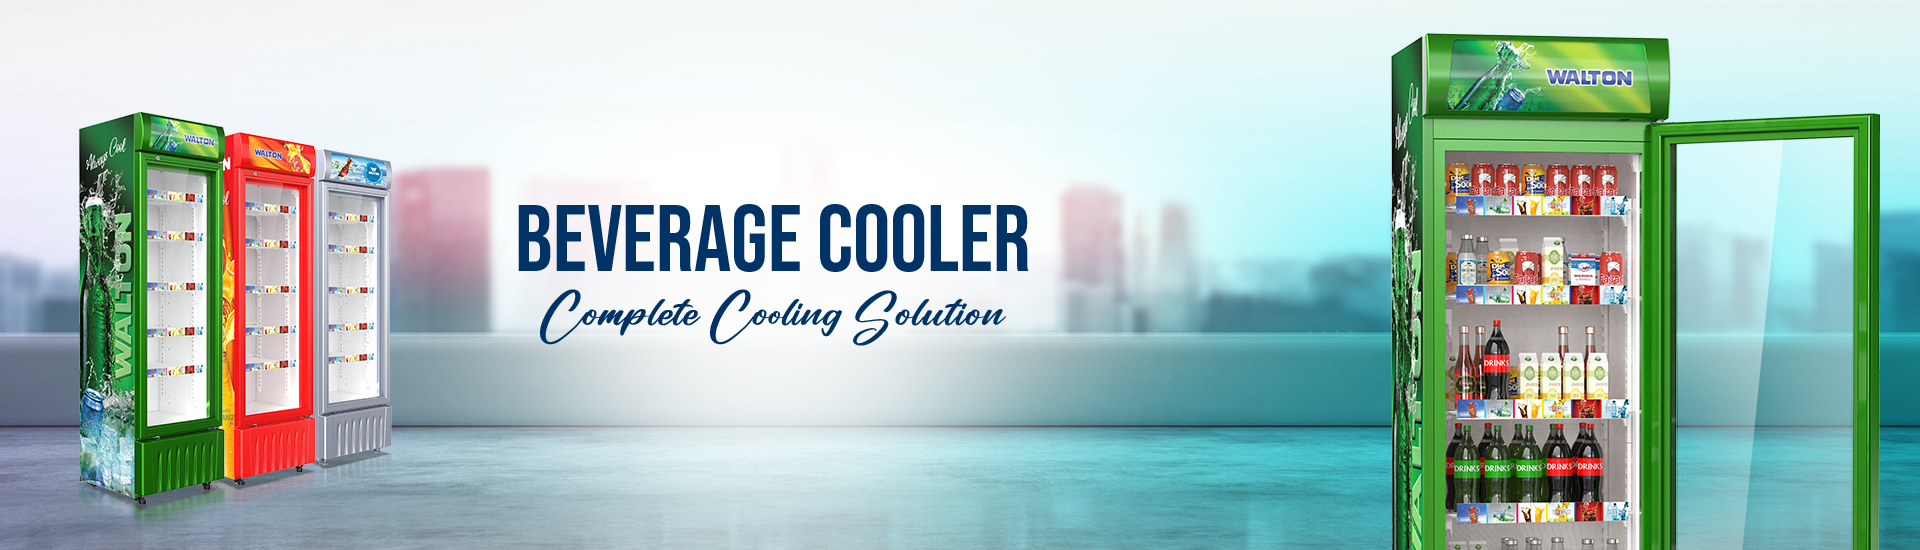 Beverage Cooler Banner